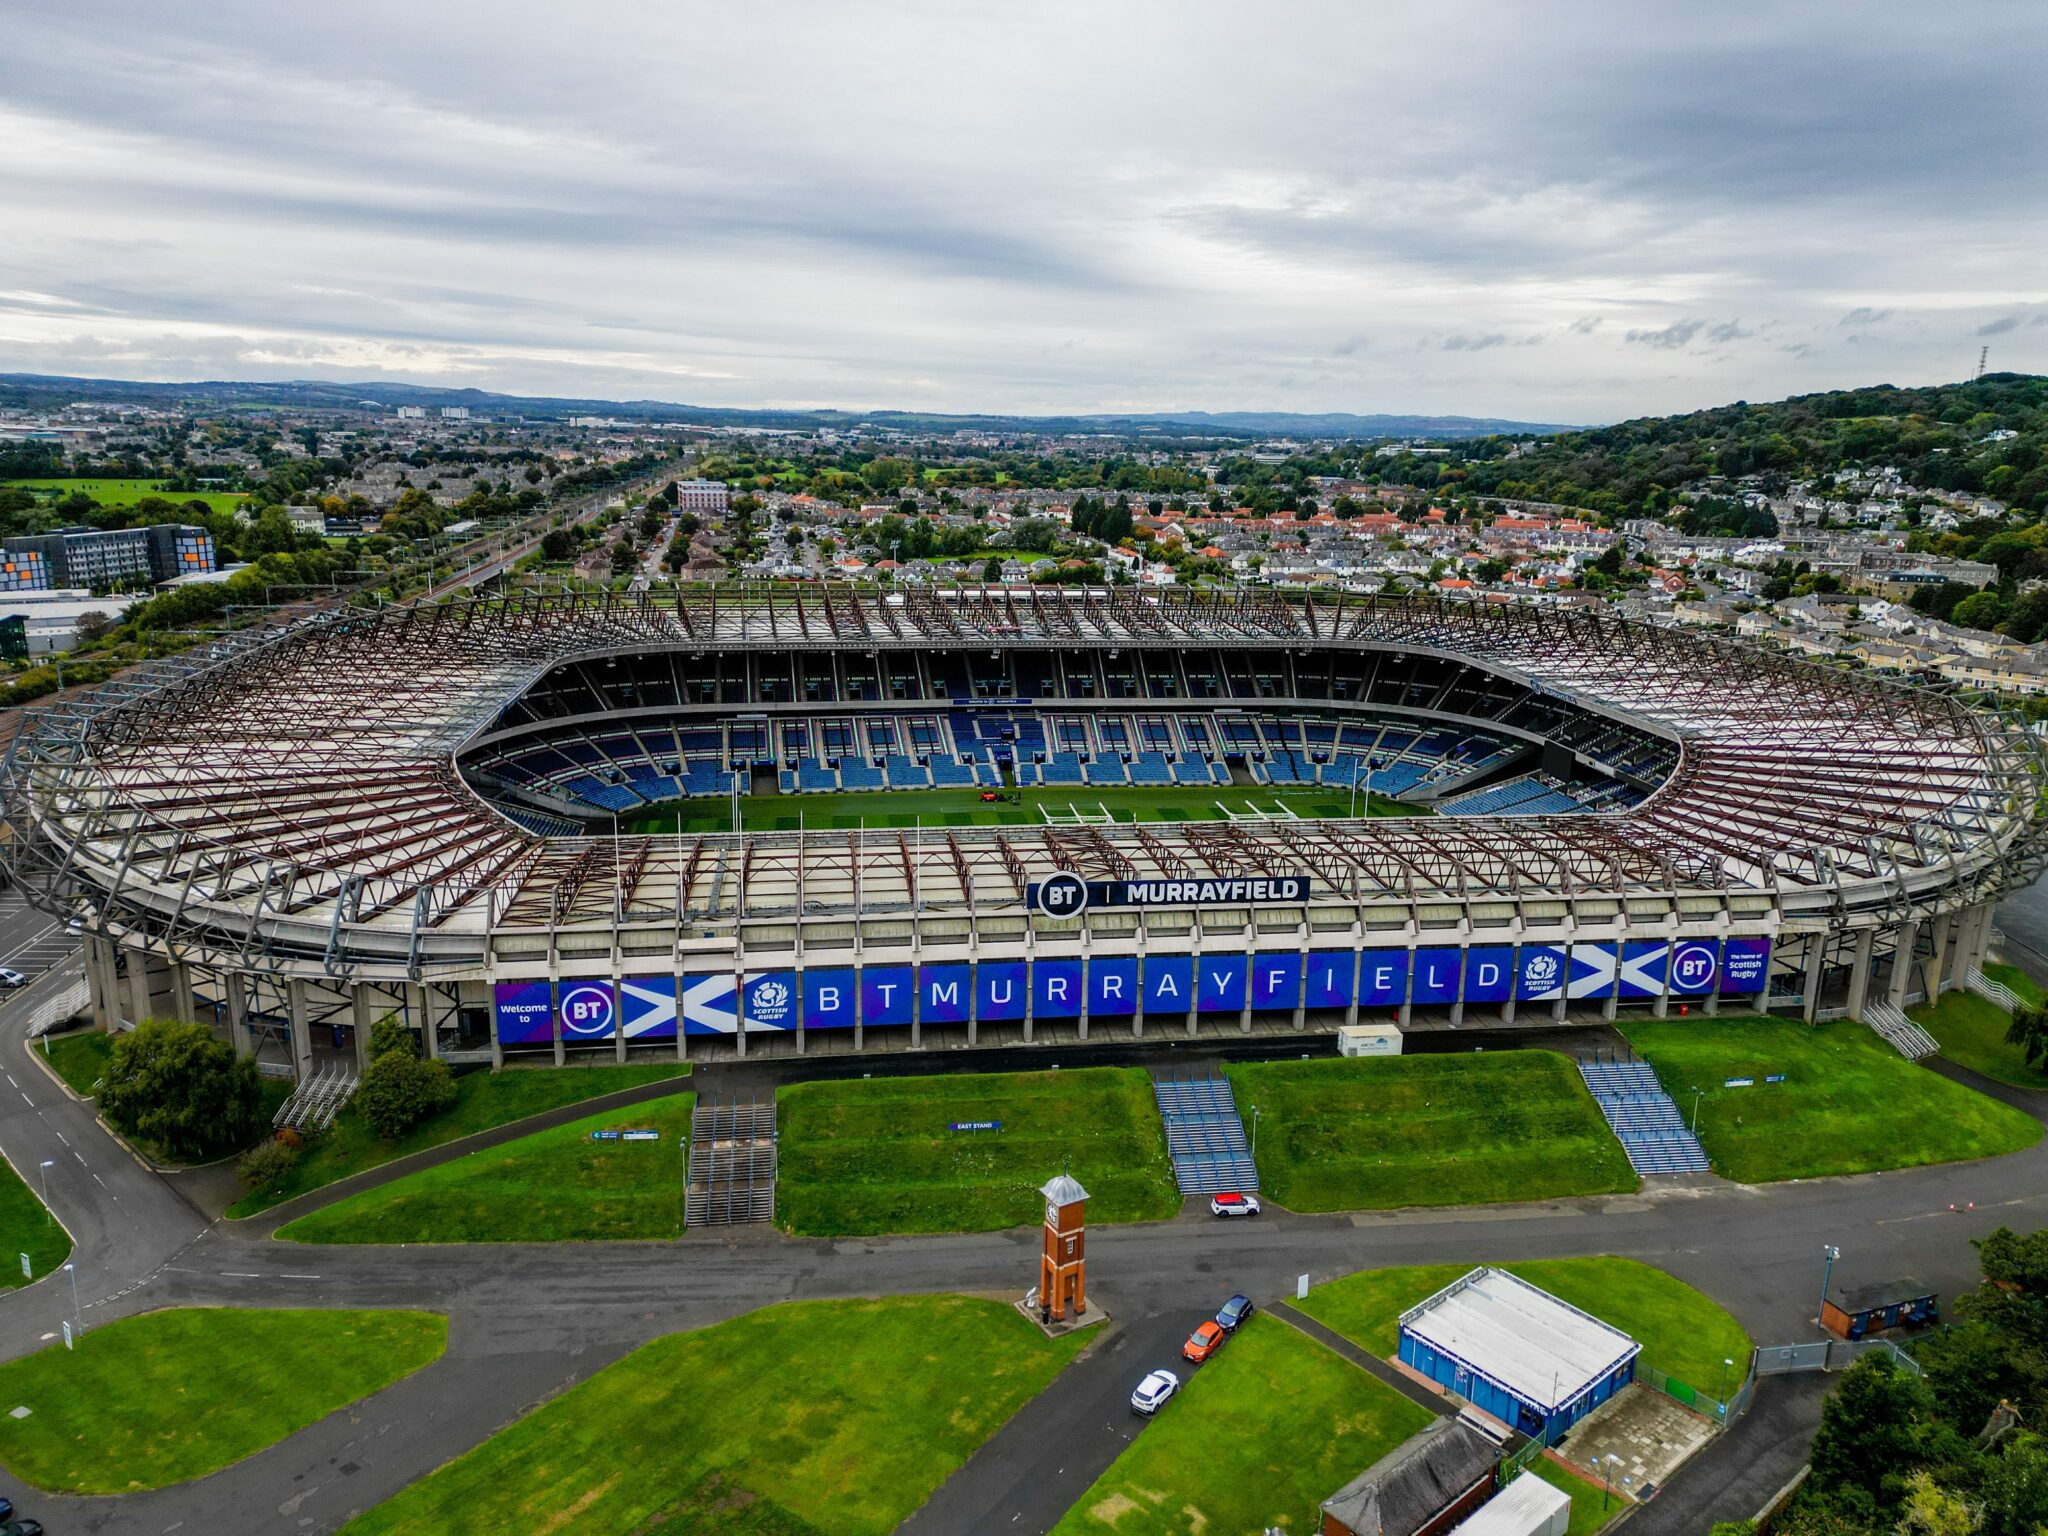 Murrayfield stadium in Scotland